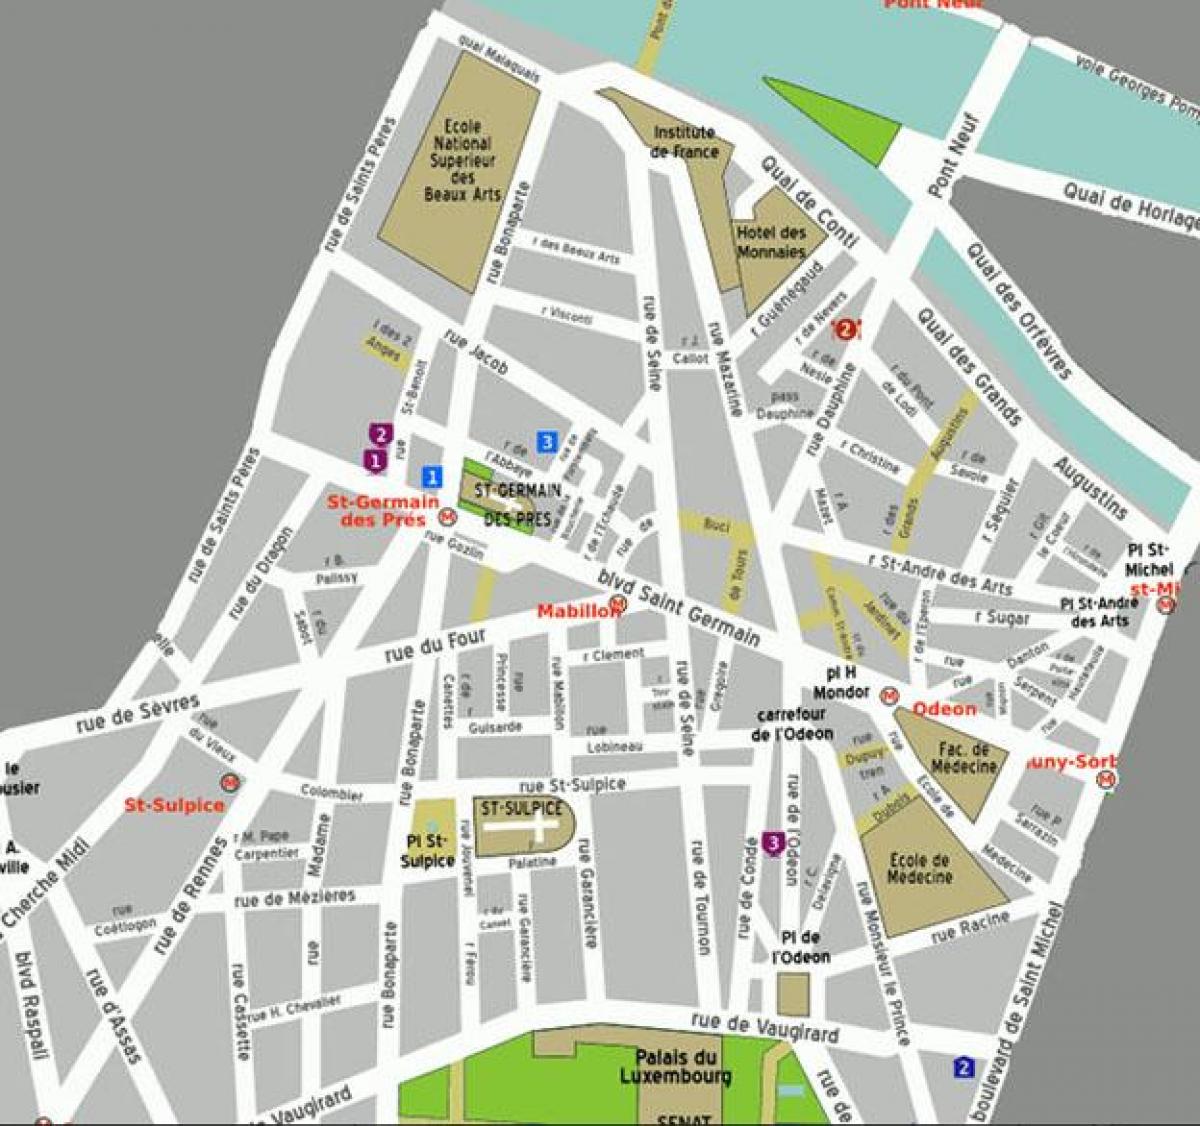 Karta četvrti Saint-Germain-des-prés